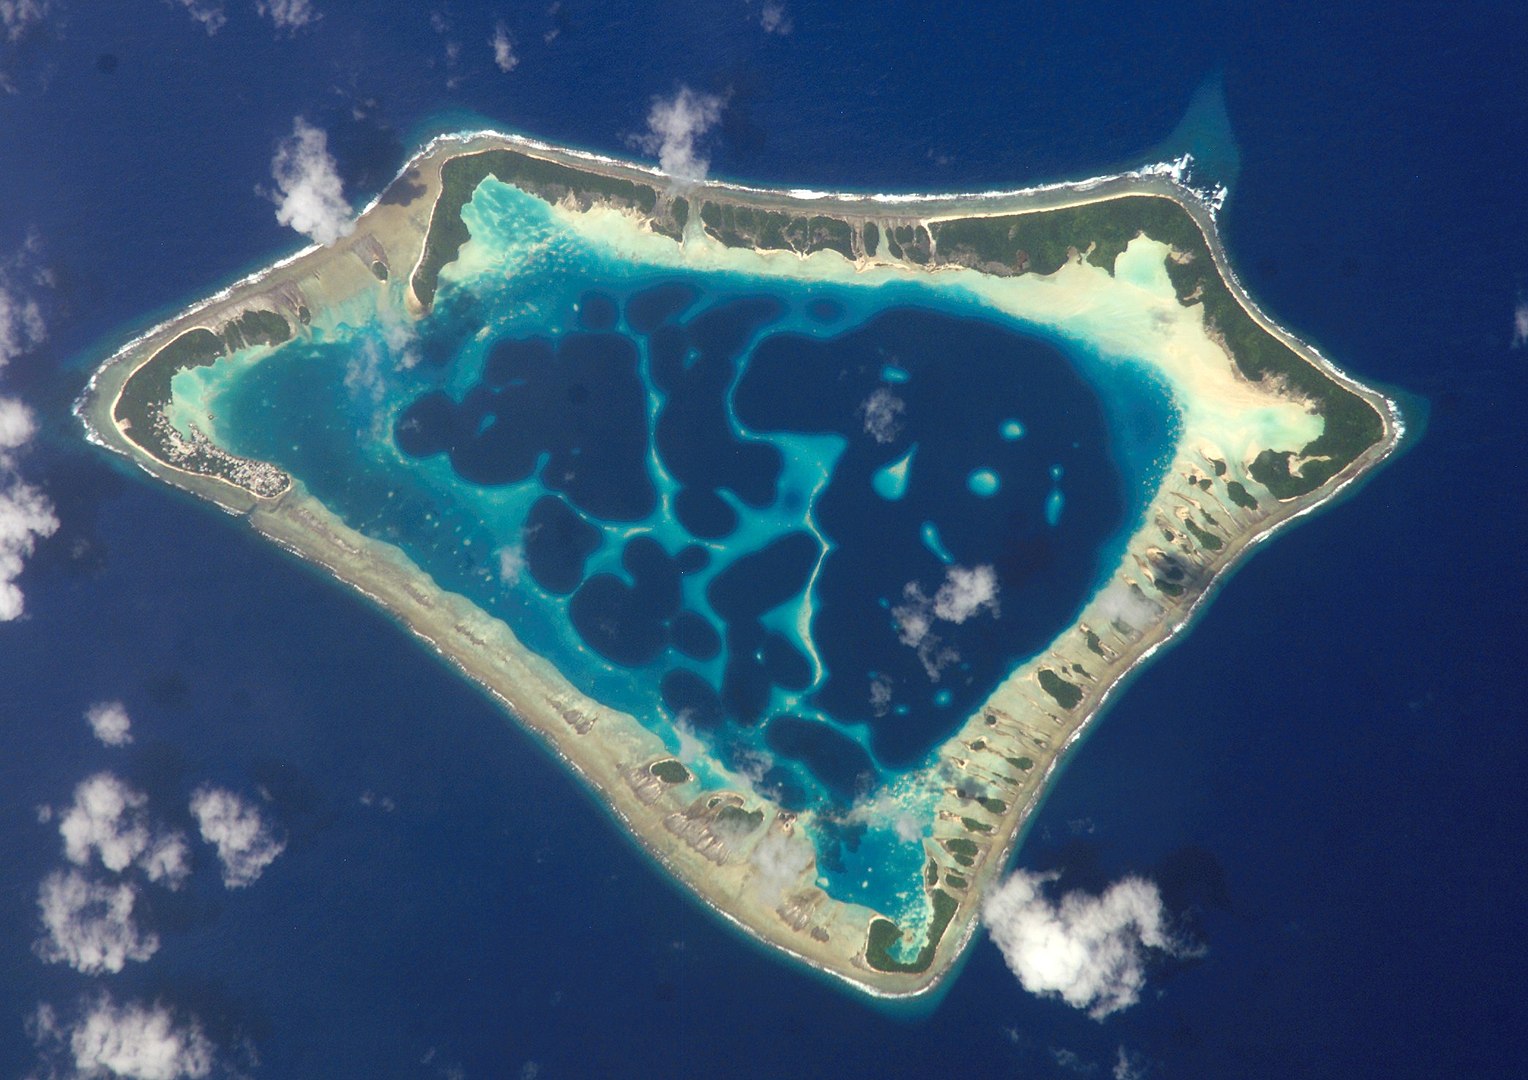 Atafu Atoll